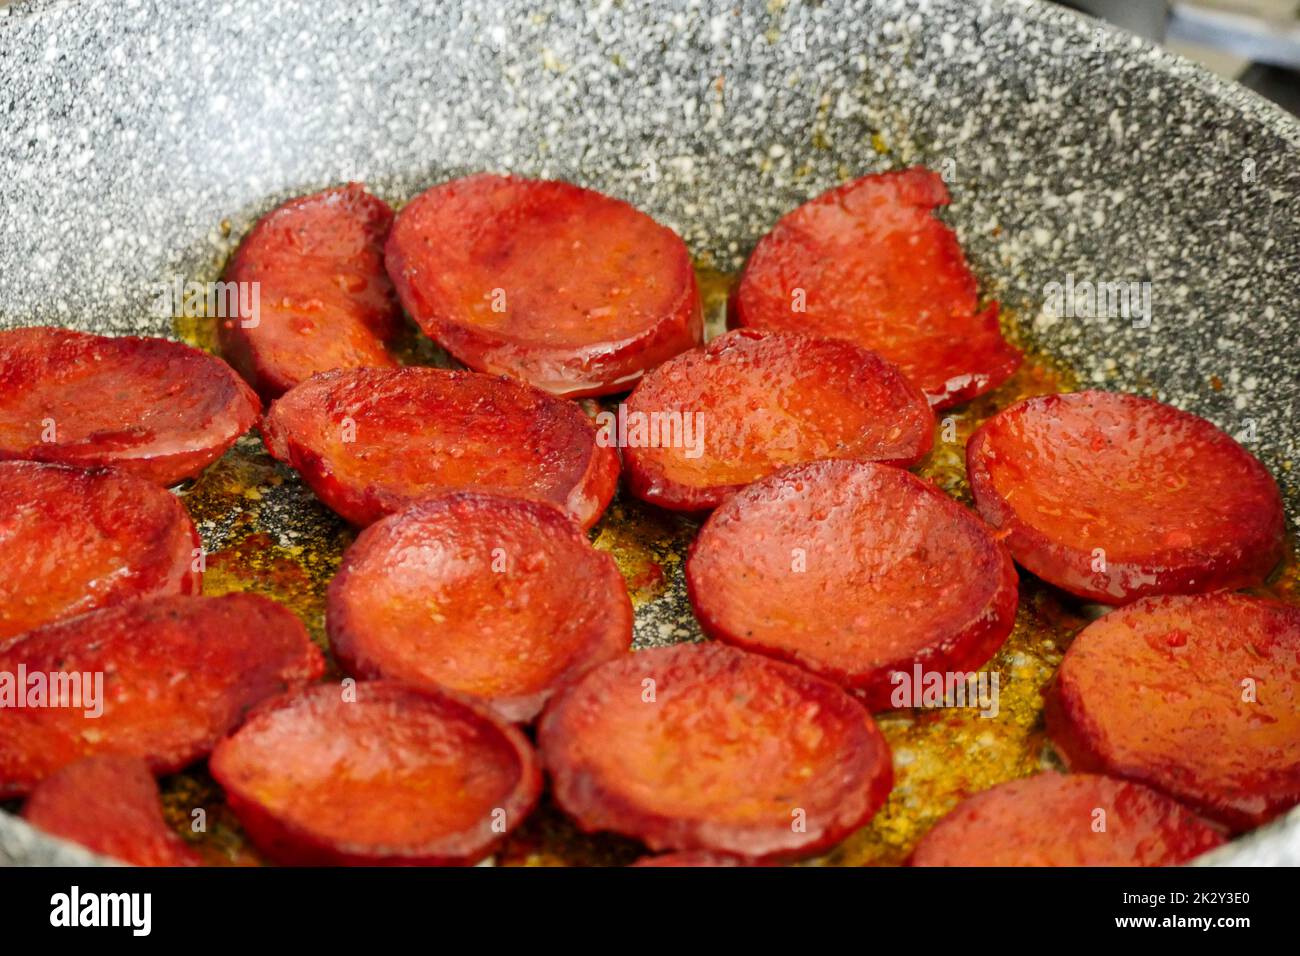 Salsiccia di manzo fritta in padella in stile turco con fette grandi, salsiccia di manzo calda è cucinata in padella Foto Stock